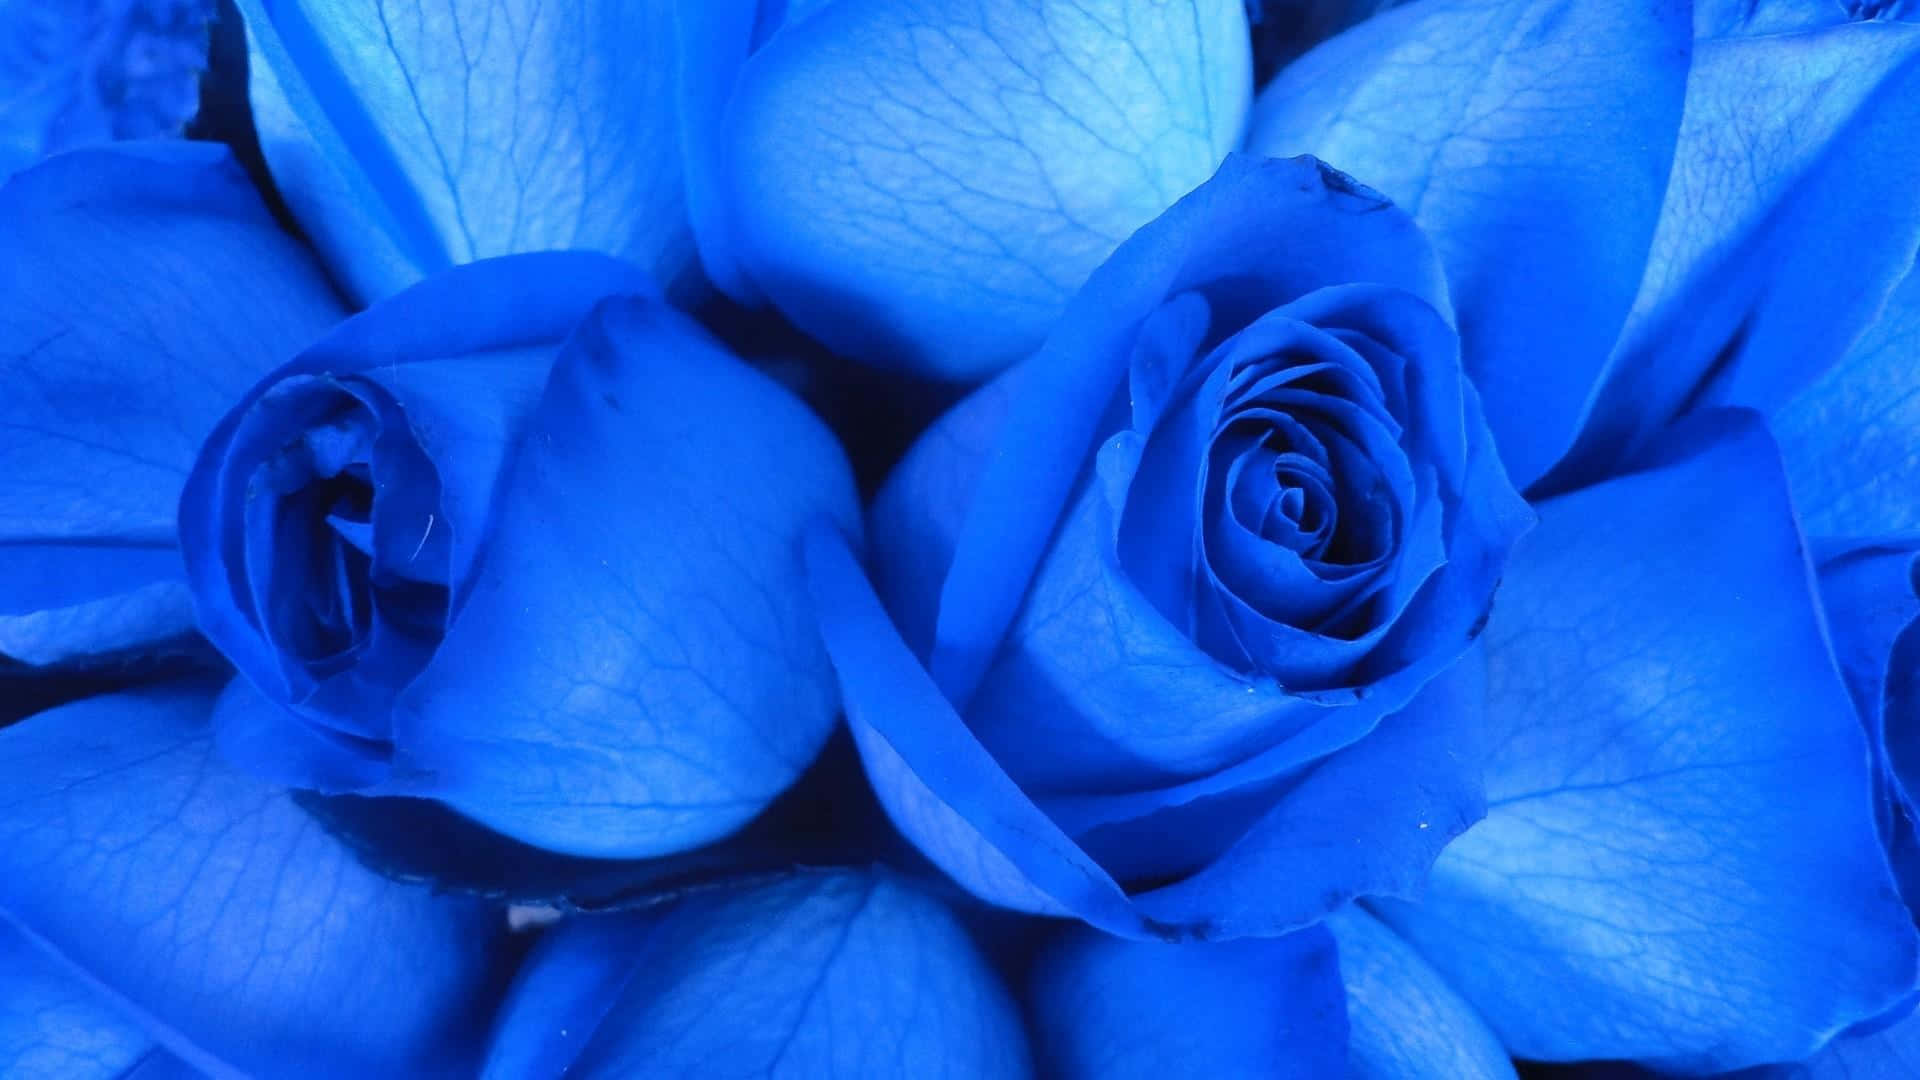 Sumérgeteen Un Mundo Onírico Con La Belleza De Una Rosa Azul. Fondo de pantalla